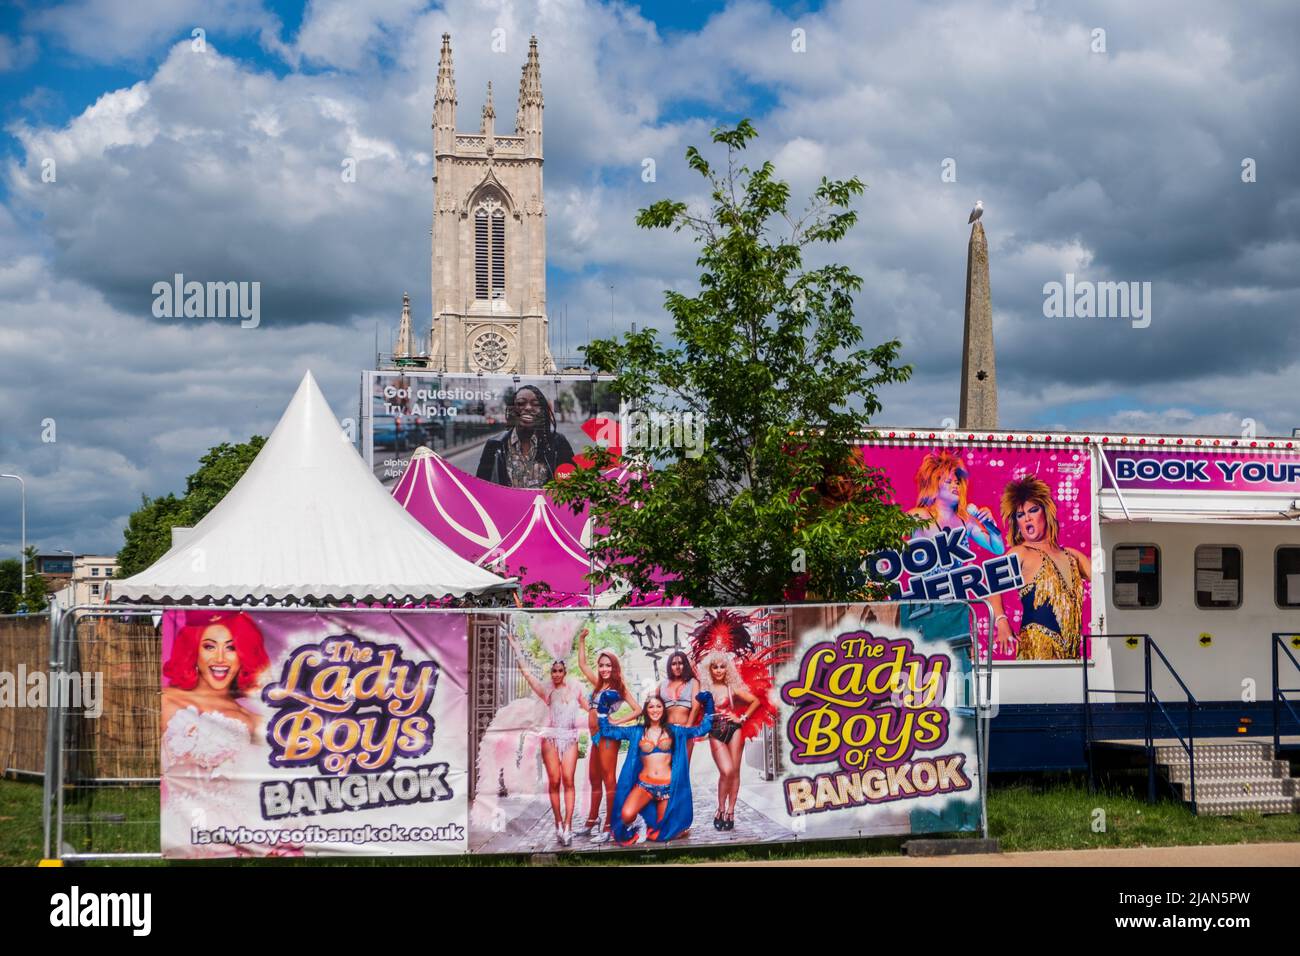 Am 2022. Mai kehren die Lady Boys of Bangkok wieder zum Brighton Festival Fringe zurück - vor der St. Peters Church. Stockfoto